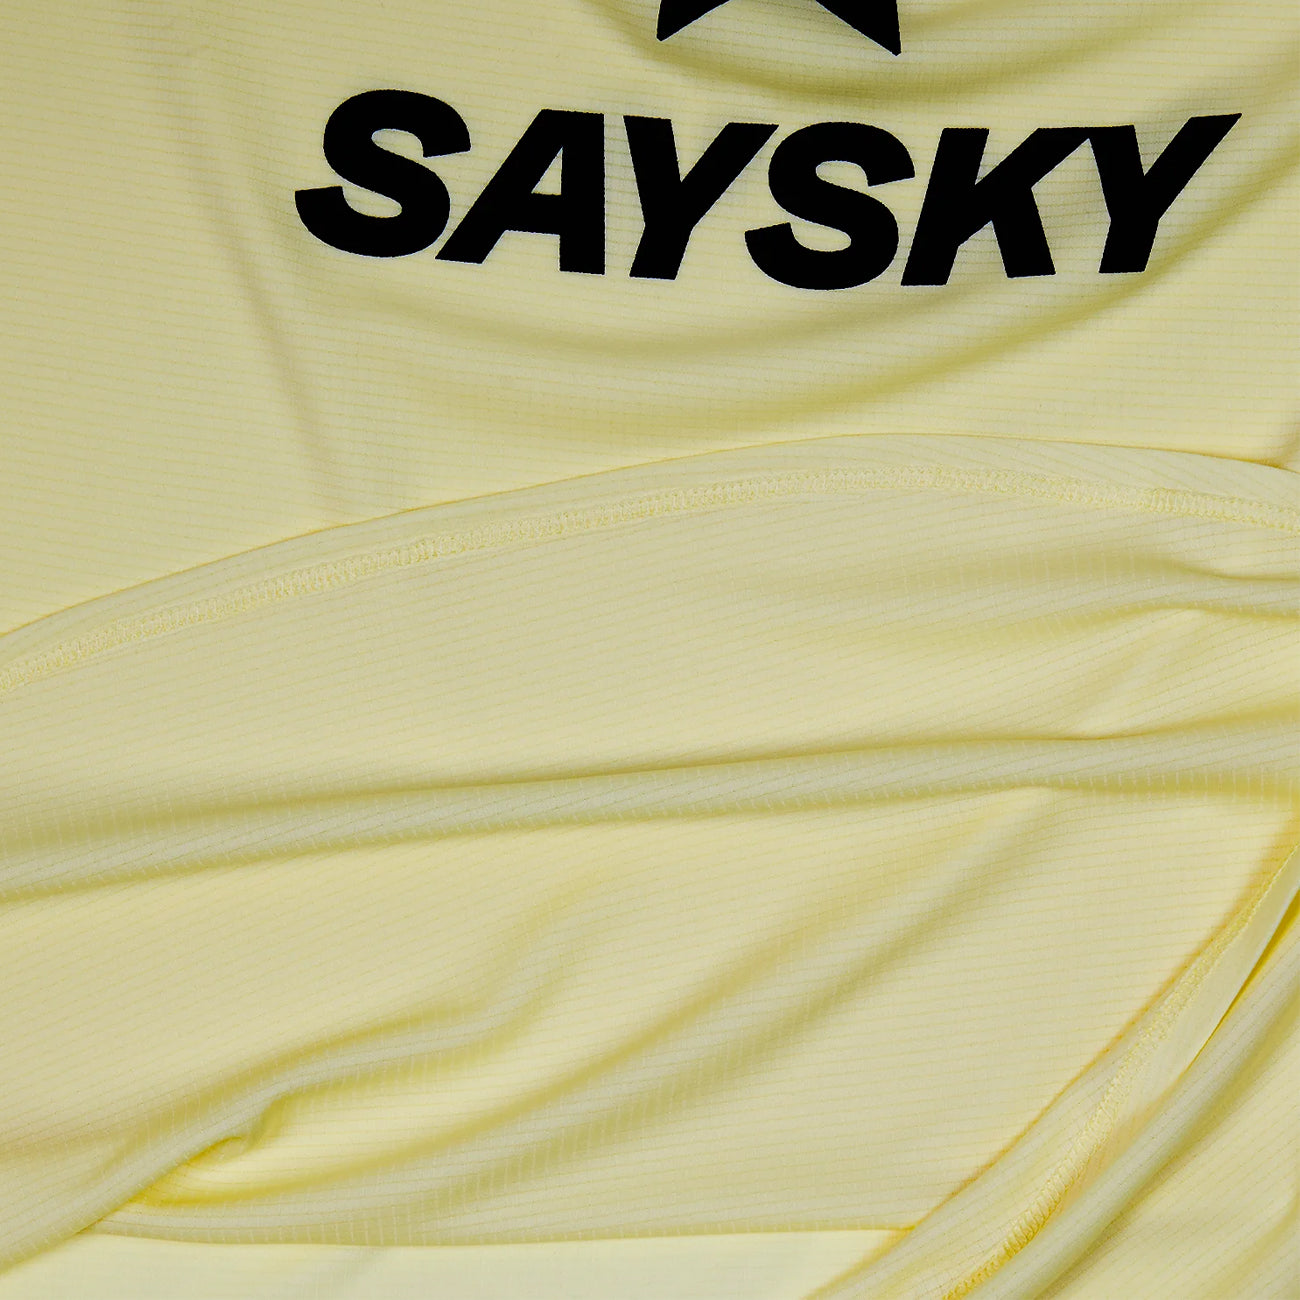 Saysky Logo Flow Singlet Yellow